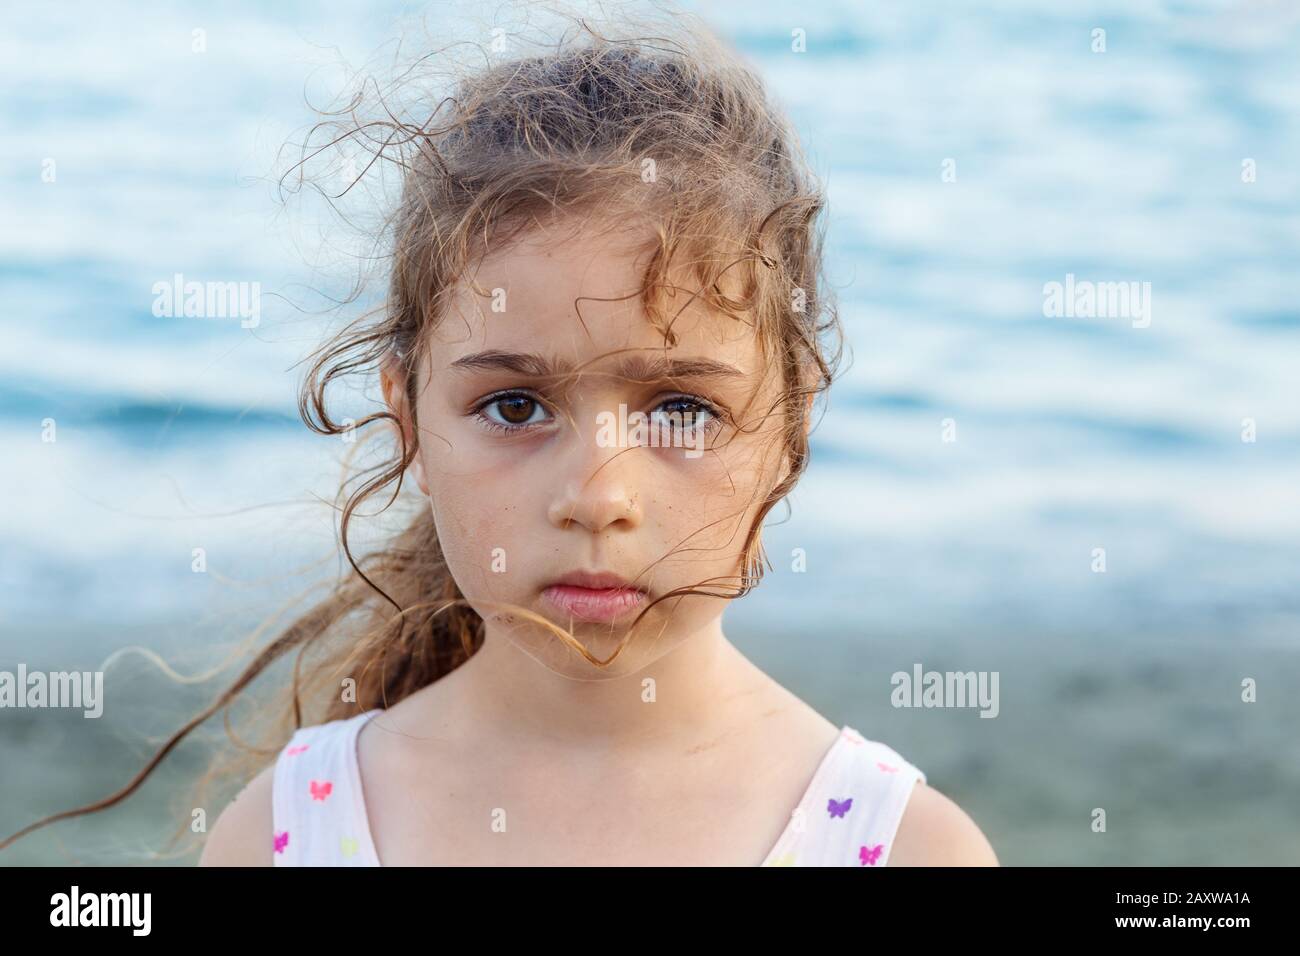 Portrait de la petite fille triste mignonne, debout au bord de la mer Banque D'Images